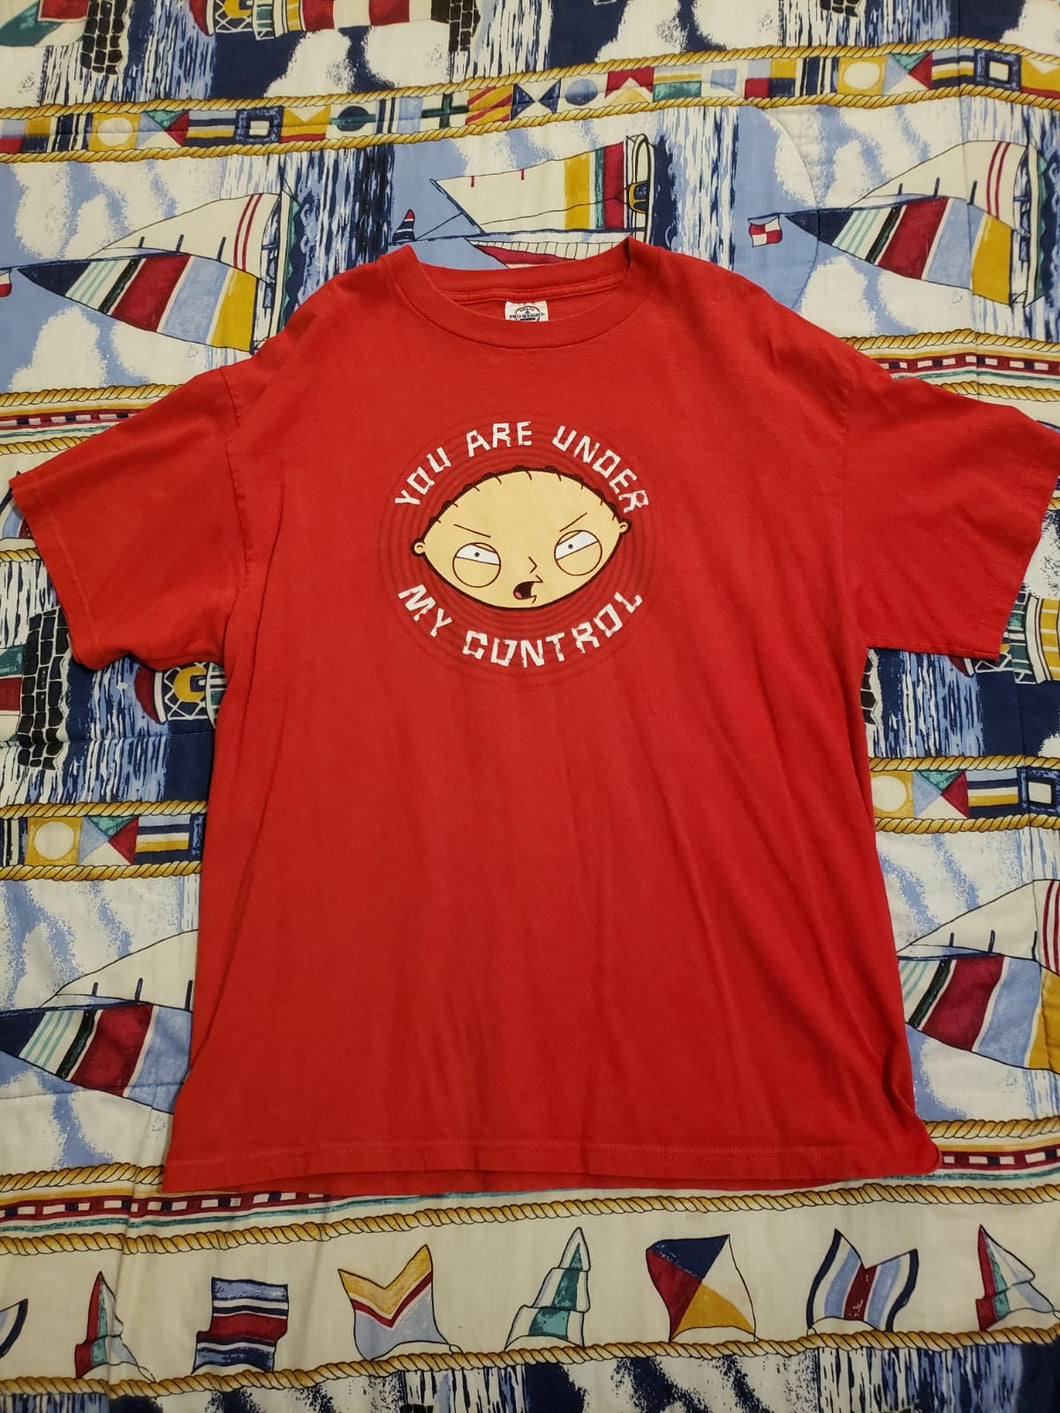 Single stitch Stewie T-shirt Size Large $20